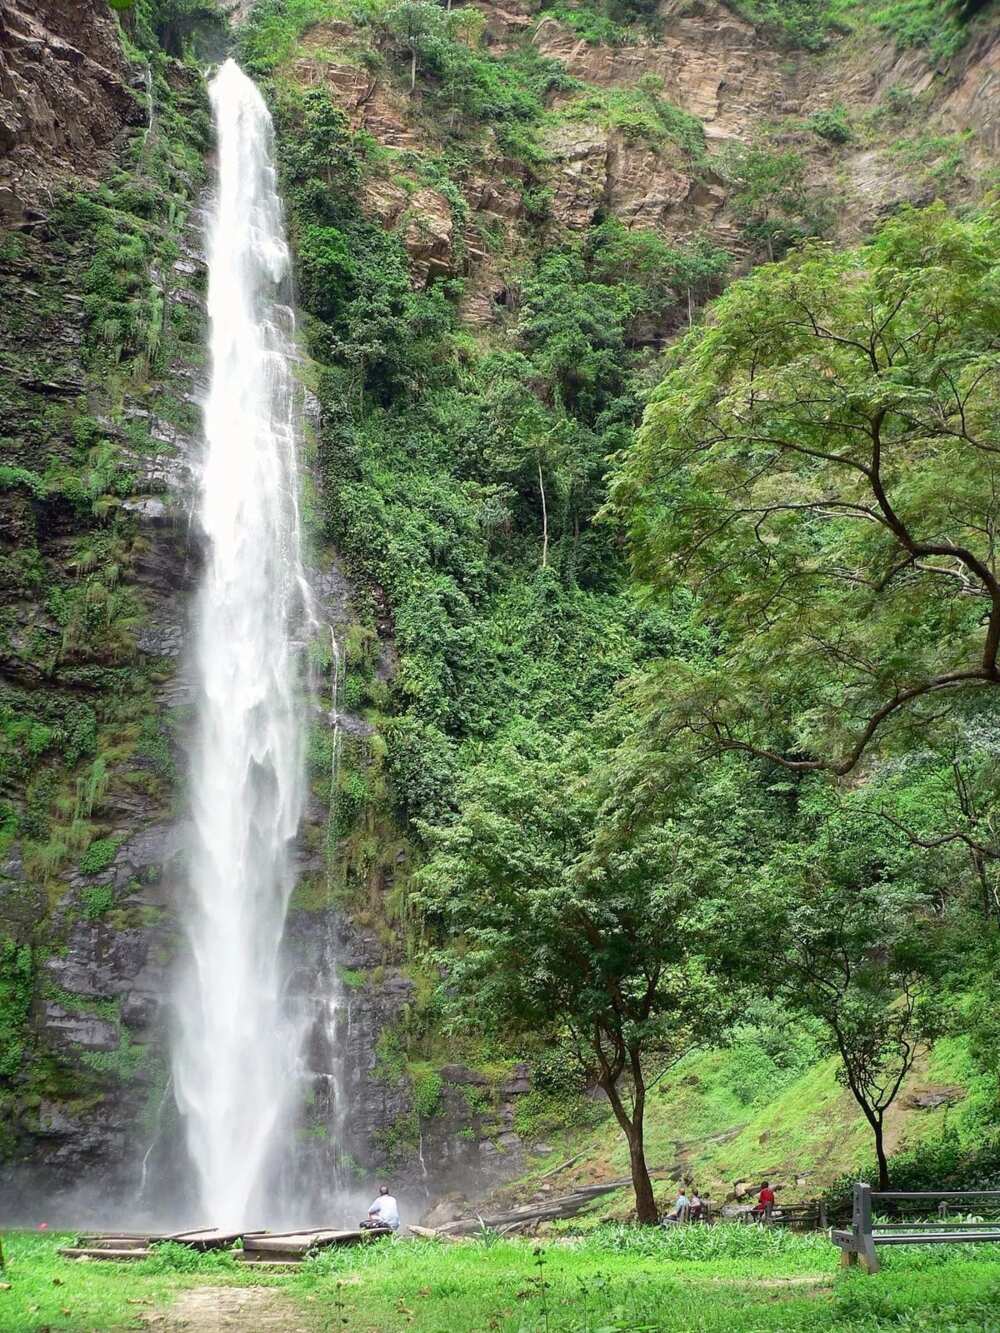 List of waterfalls in Ghana and their locations
Wli falls
Wli waterfalls